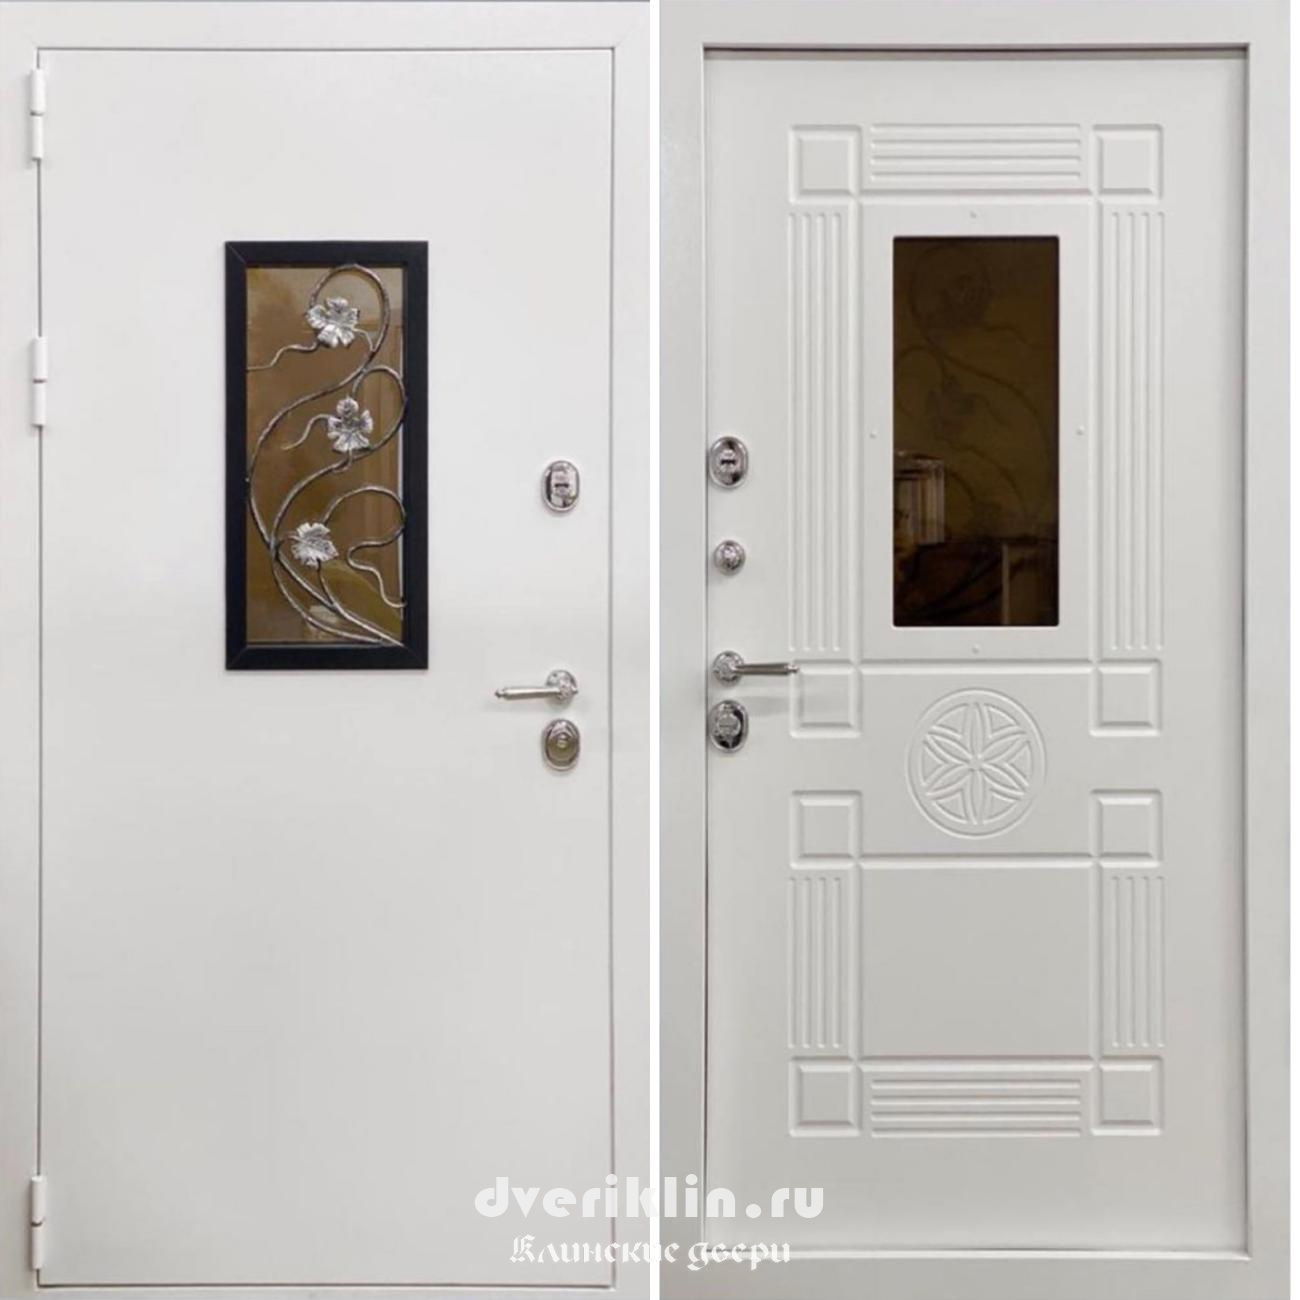 Трехконтурная дверь TR-26 (Трехконтурные двери)